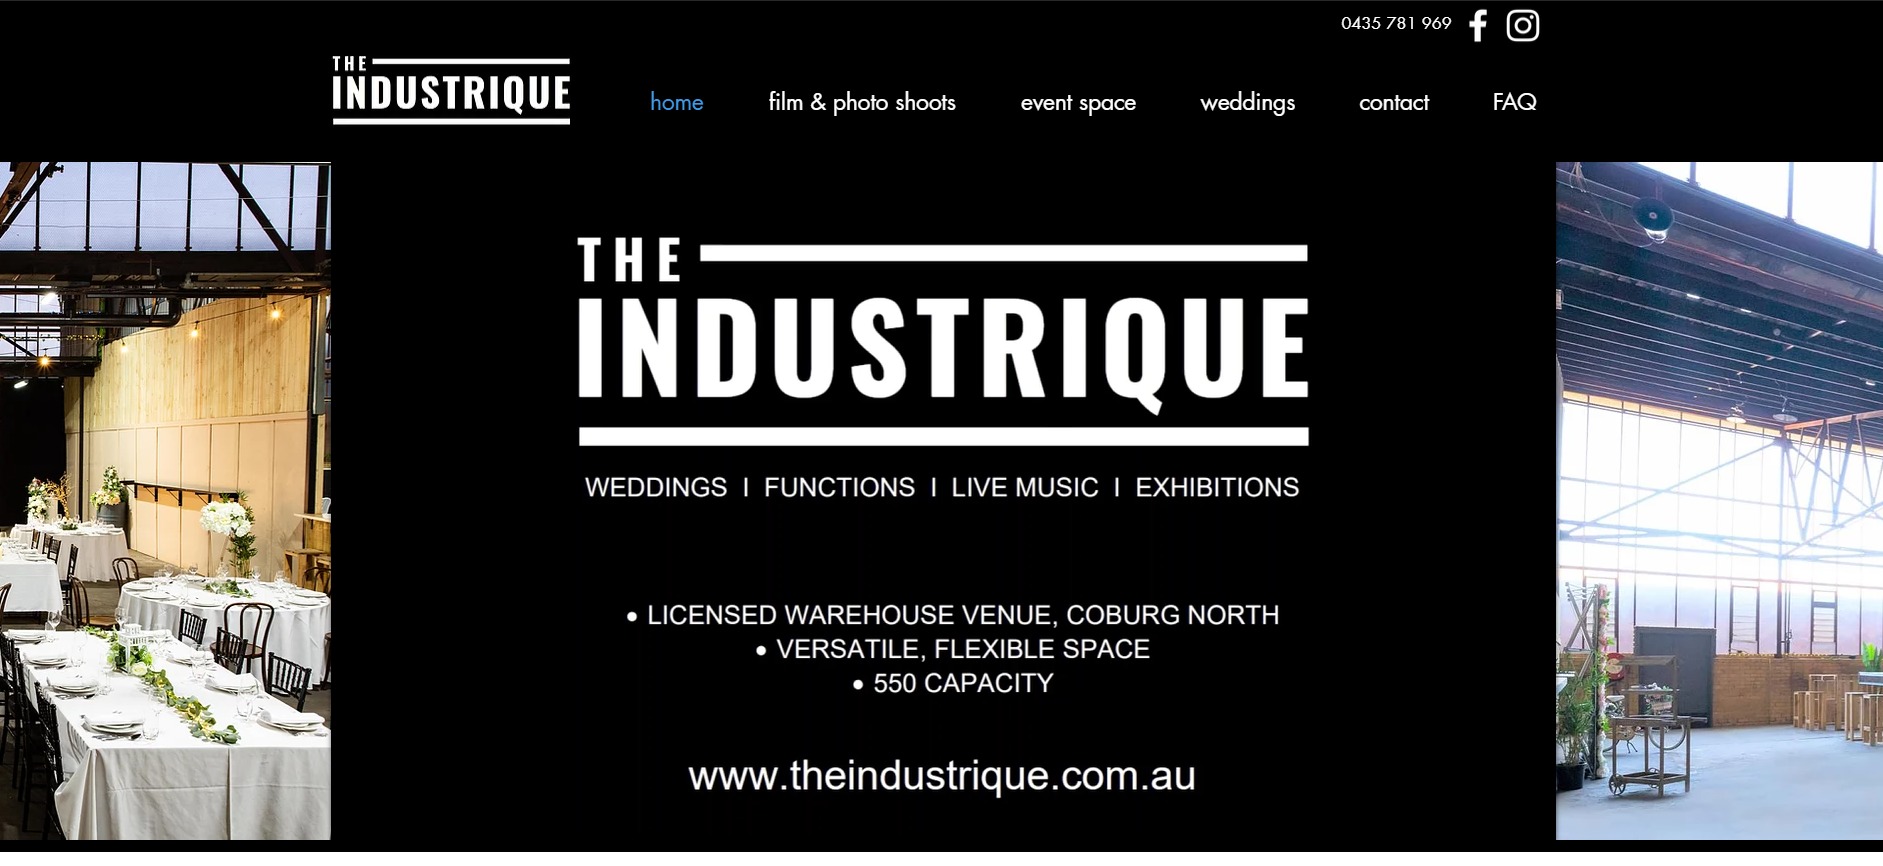 The Industrique